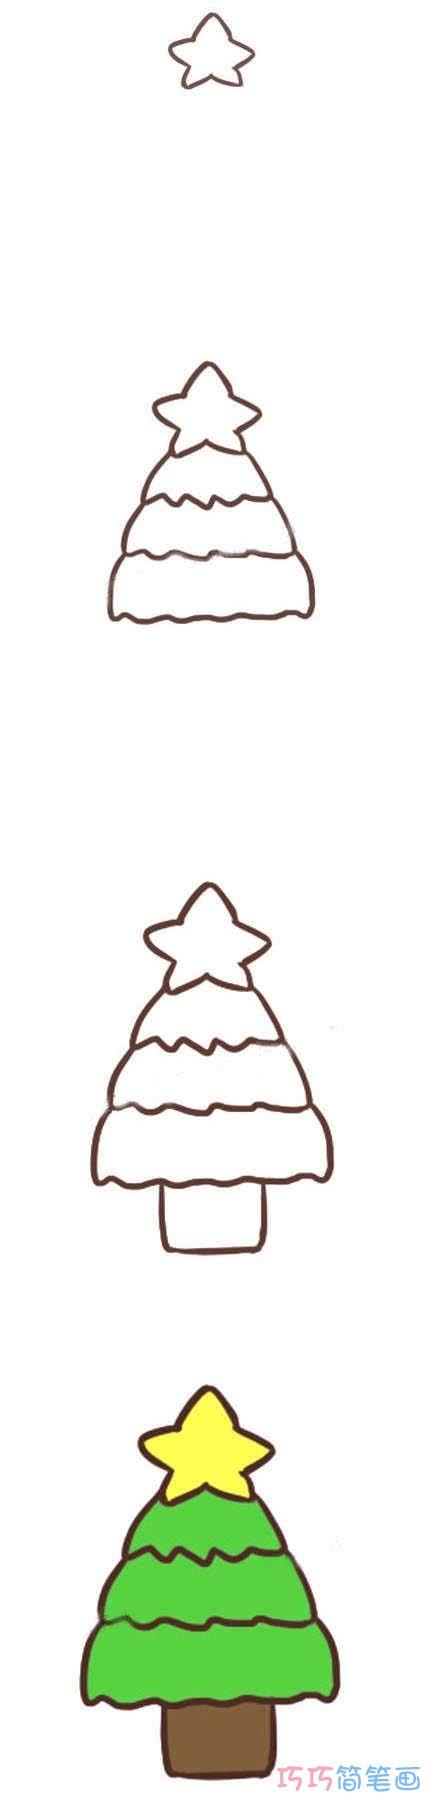 小朋友们想不想画一张好看的圣诞树的简笔画呢下面我们来简单的说